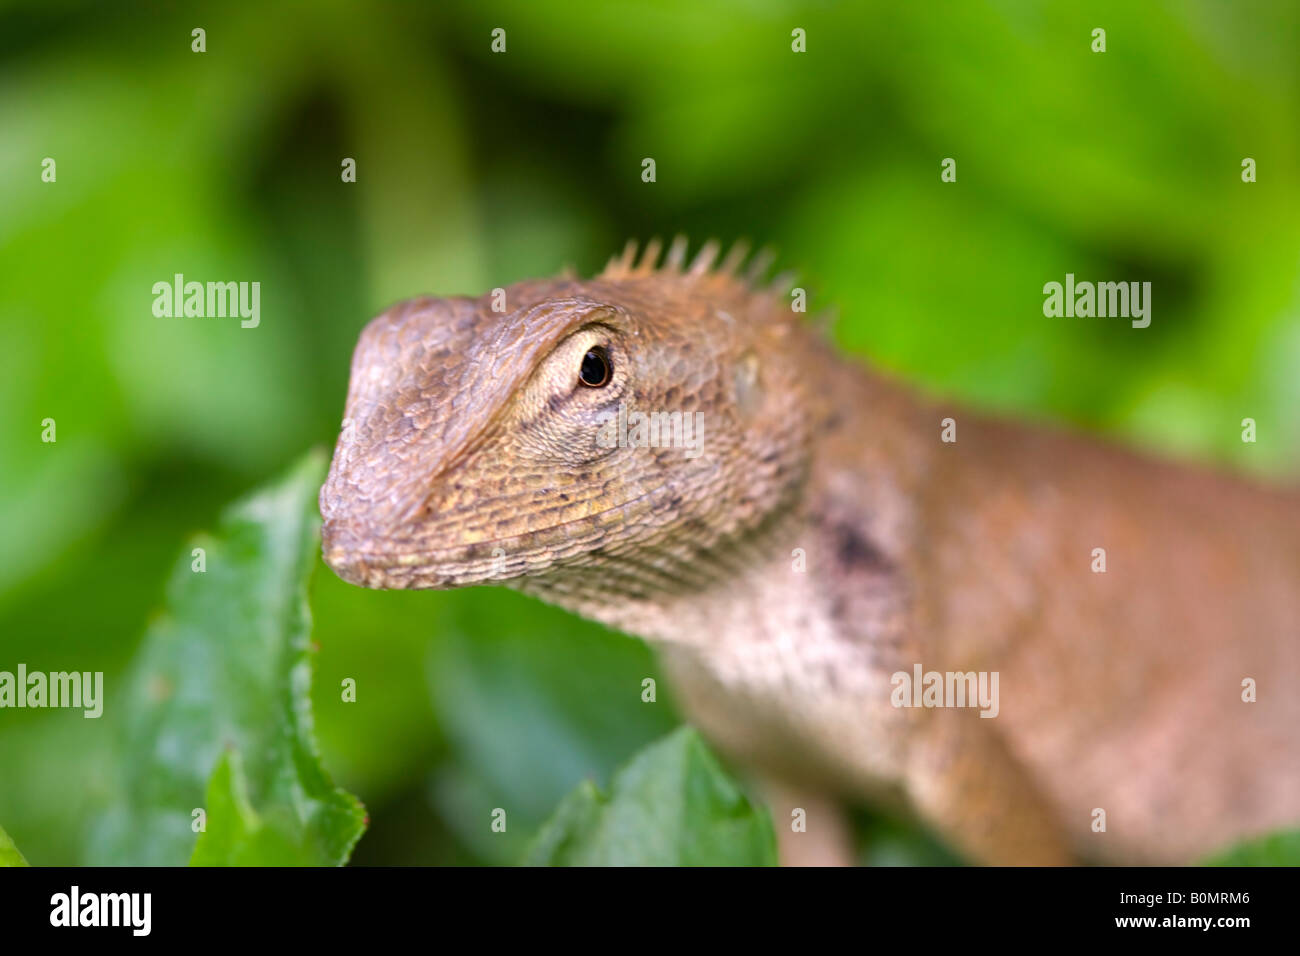 Detail of the head of a Garden Fence Lizard calotes versicolor Stock Photo